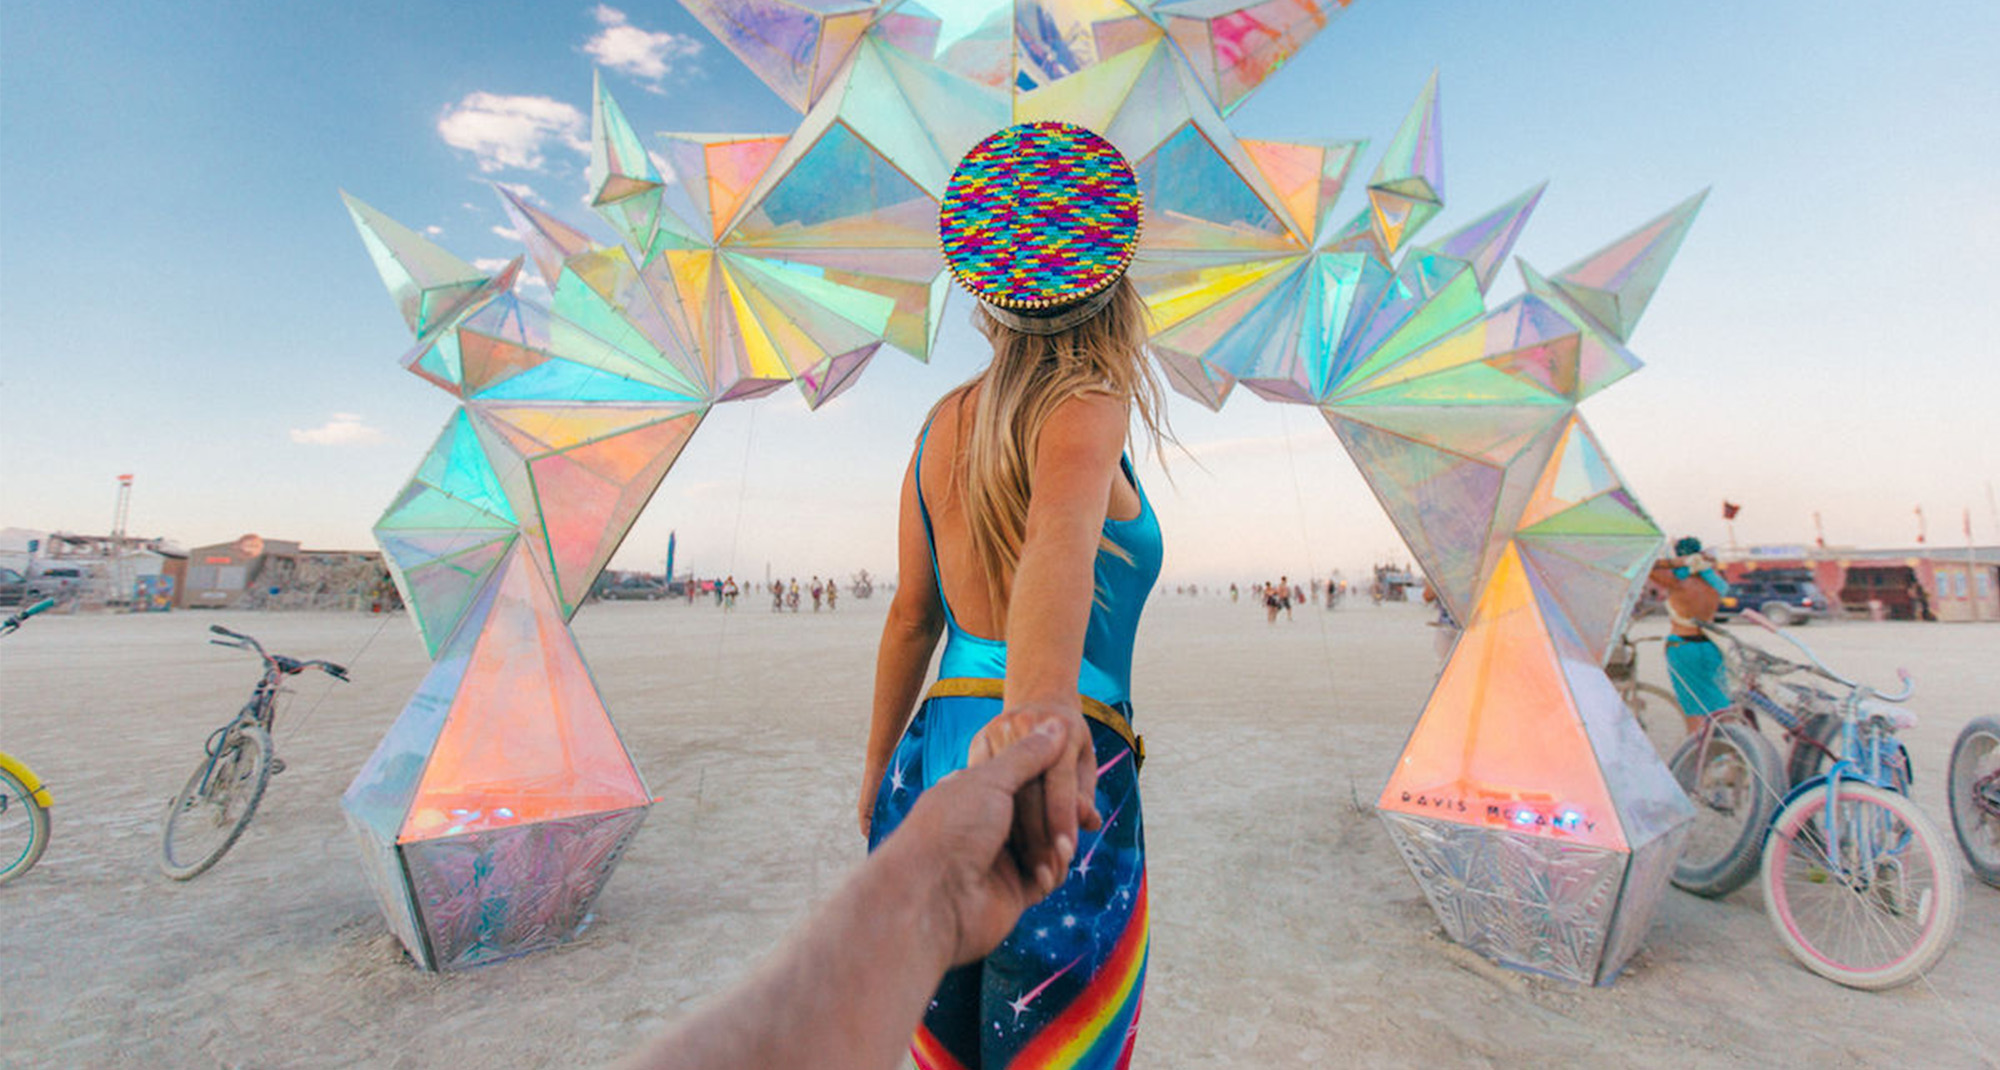 Edição 2020 do Burning Man será digital e terá galeria de arte 3d com artistas brasileiros